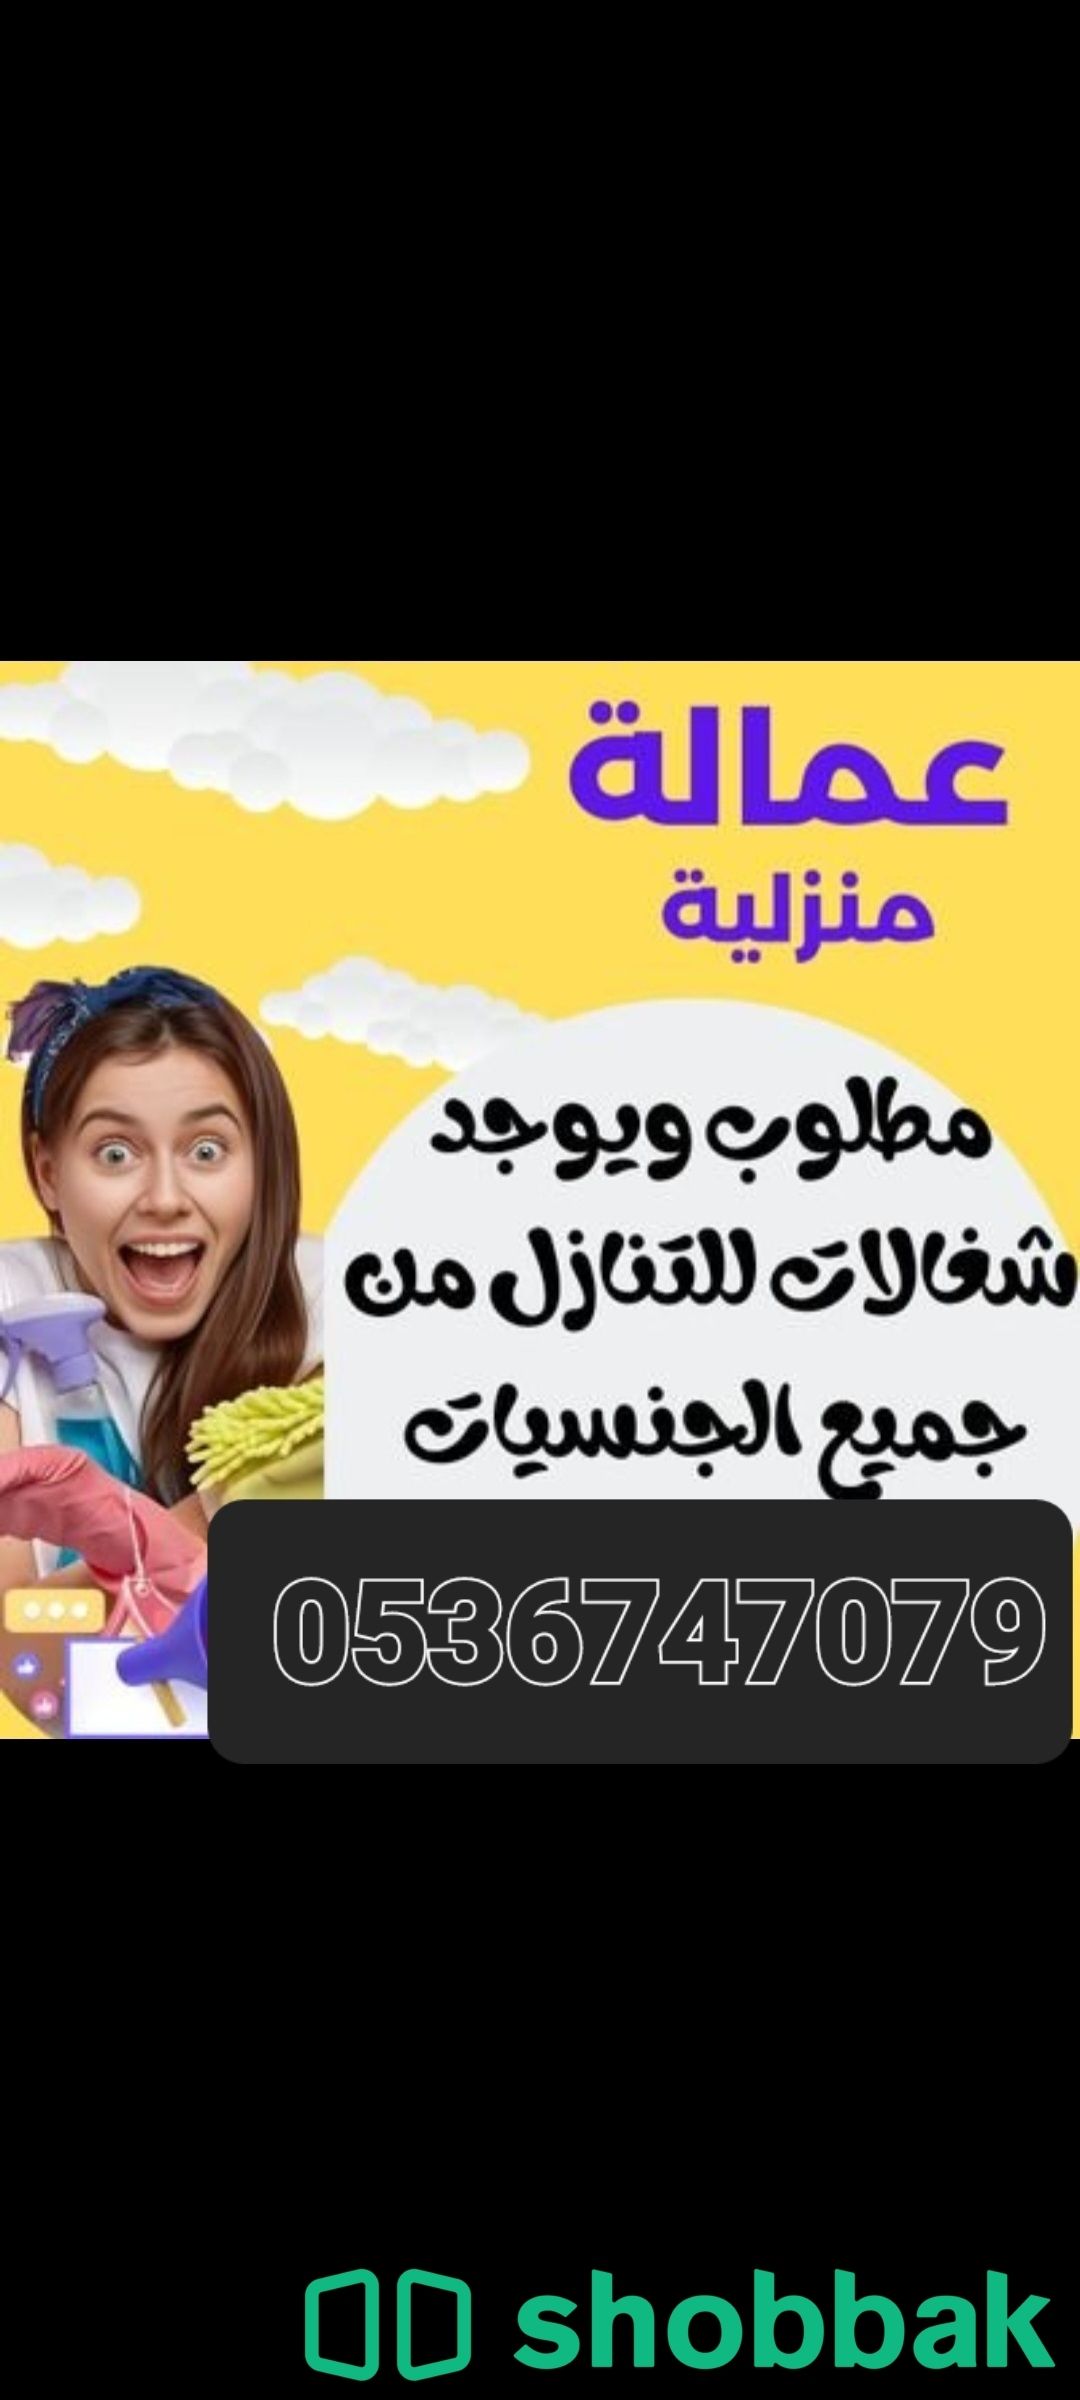 يوجد ومطلوب عاملات وطباخات للتنازل بافضل الاسعار 0536747079 Shobbak Saudi Arabia